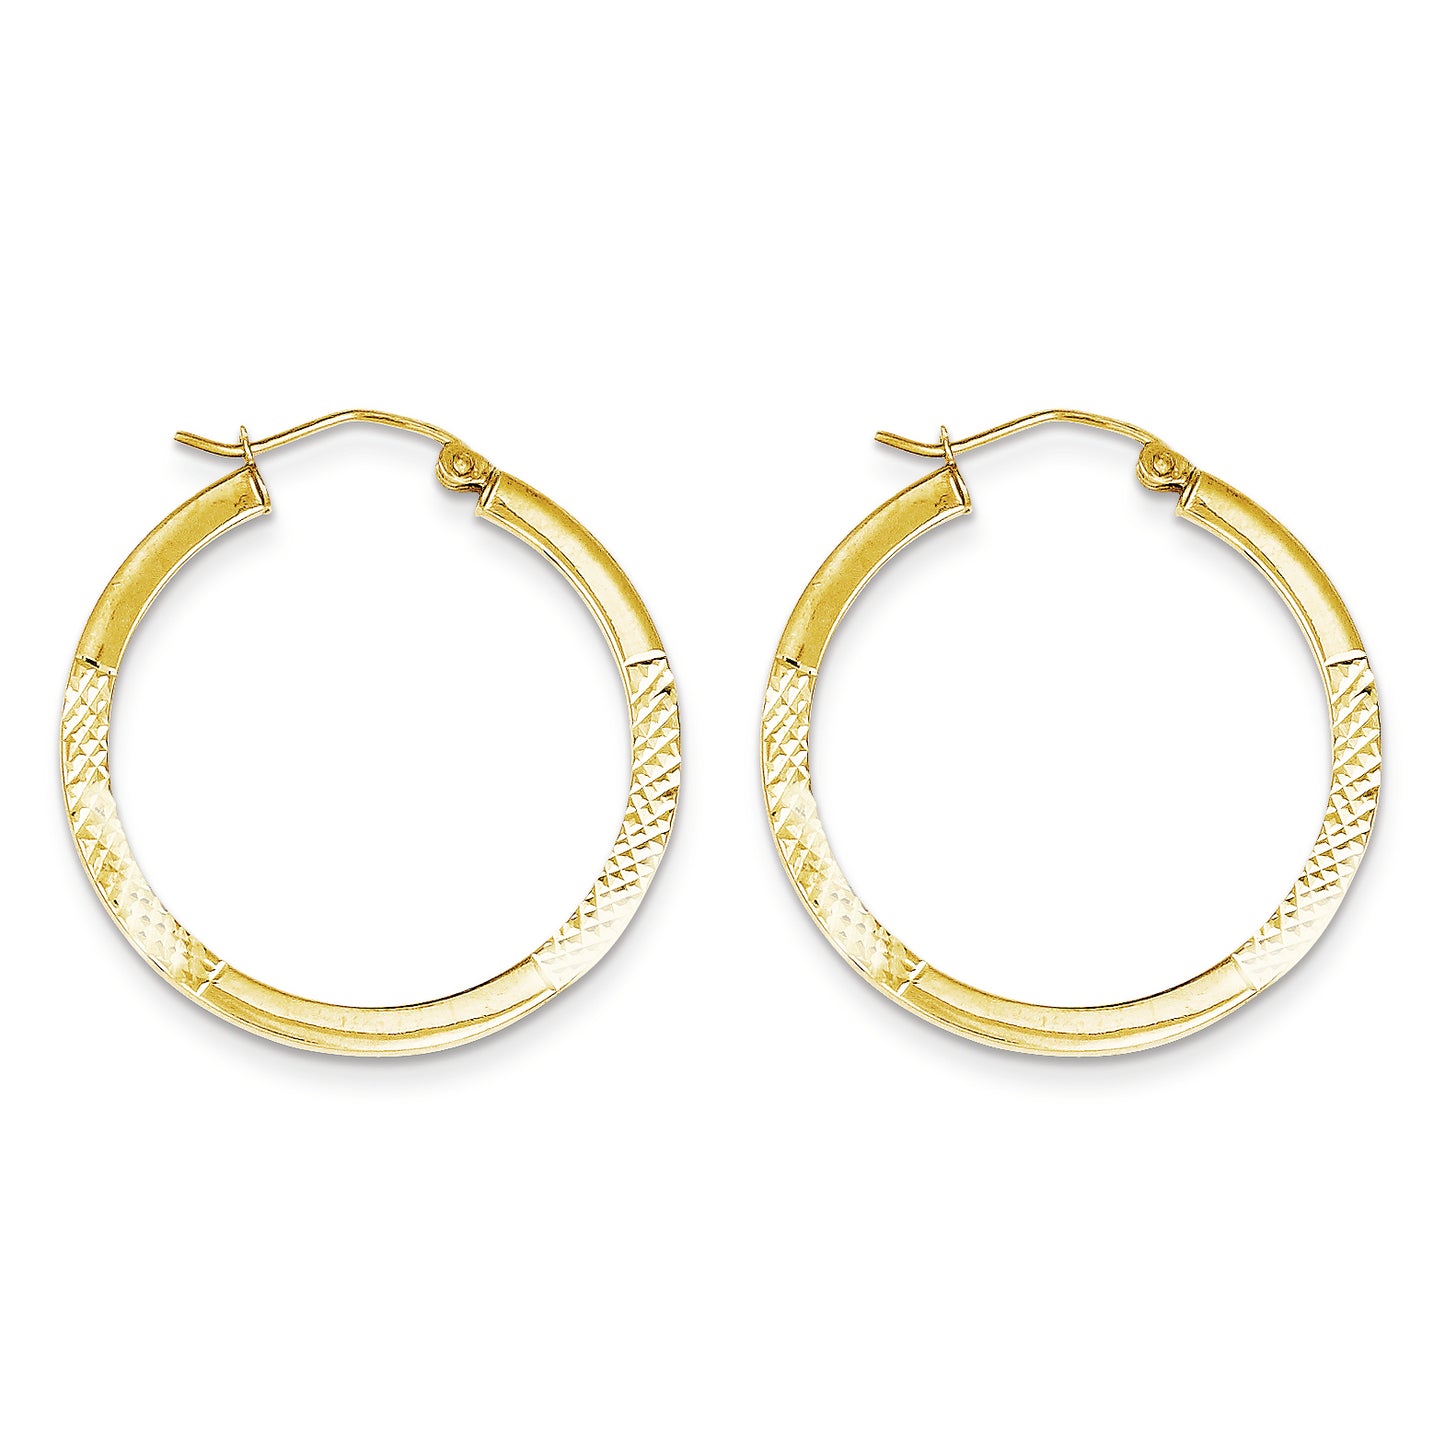 10K Gold Diamond Cut 2.5x30mm Hoop Earrings